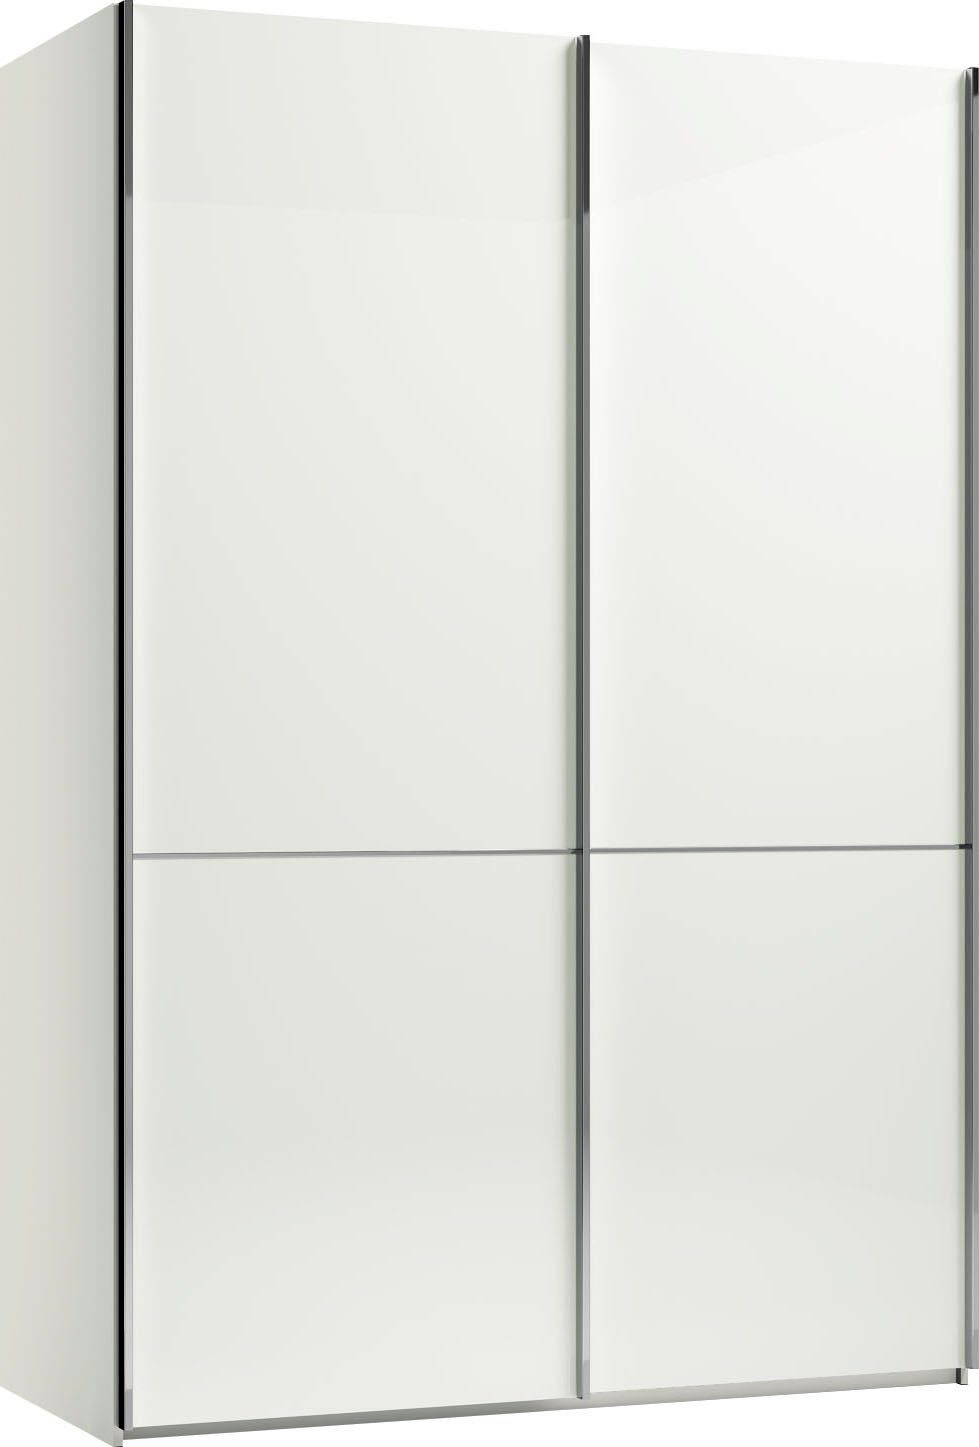 GALLERY M branded by Weiß mit Musterring Imola Einlegeböden Glastüren und Kleiderstangen, und inkl. W Aufleistungen Schwebetürenschrank